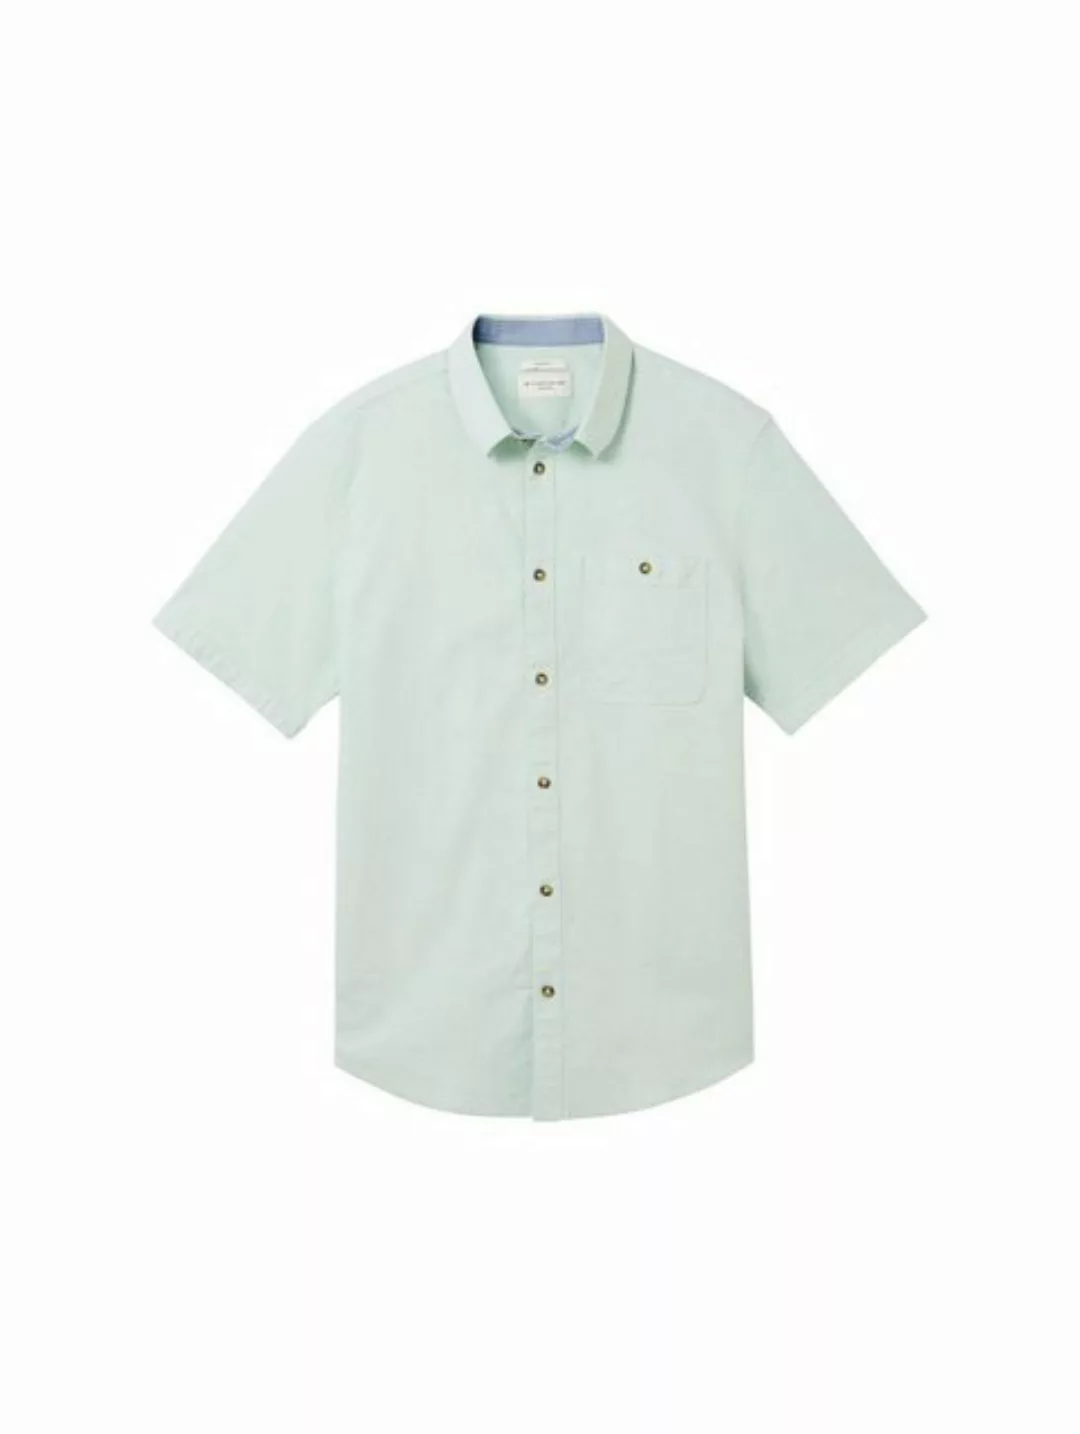 TOM TAILOR T-Shirt stretch oxford shirt günstig online kaufen